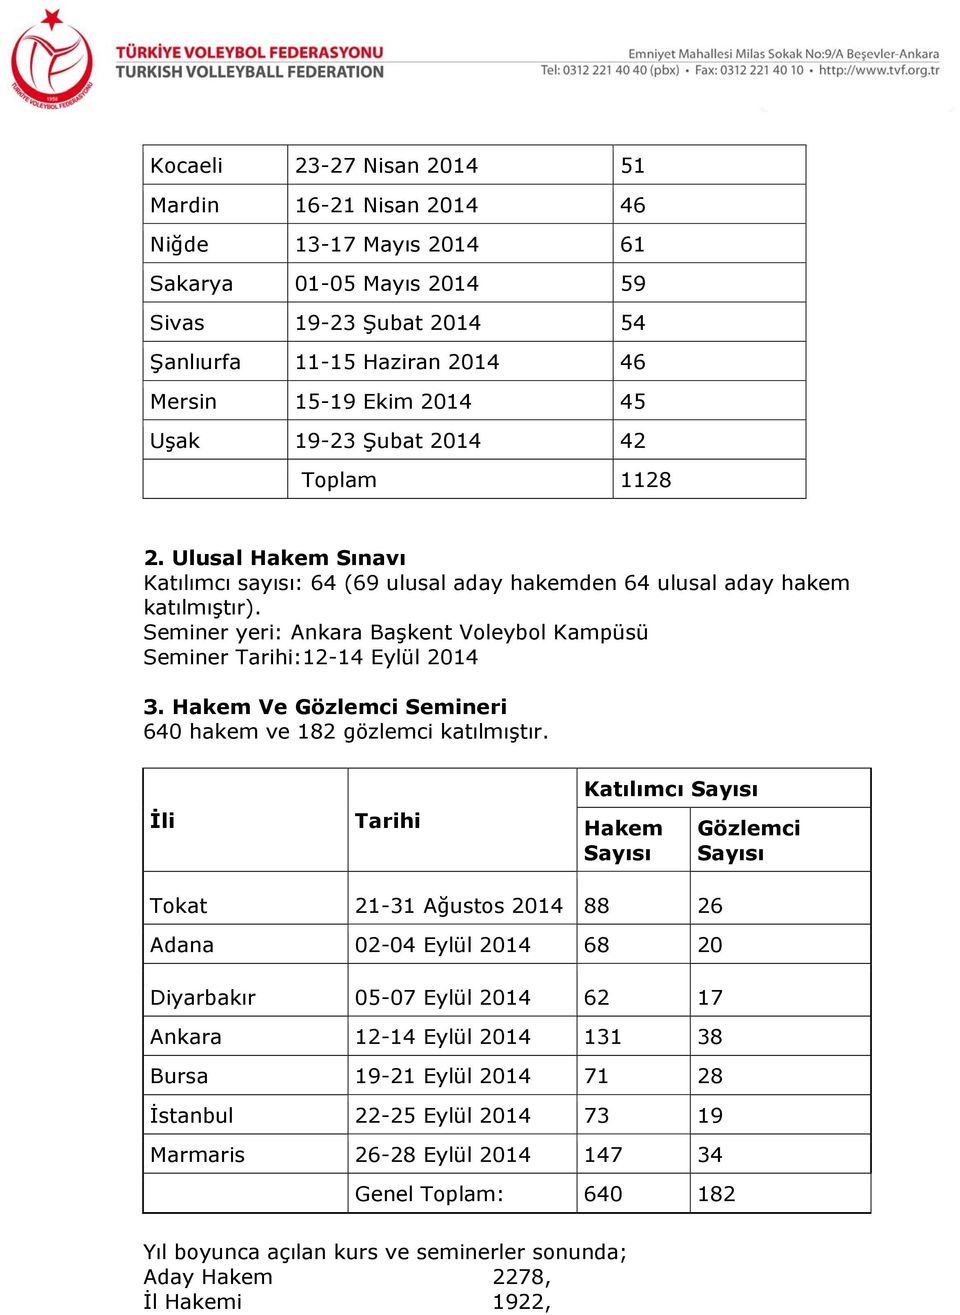 Seminer yeri: Ankara Başkent Voleybol Kampüsü Seminer Tarihi:12-14 Eylül 2014 3. Hakem Ve Gözlemci Semineri 640 hakem ve 182 gözlemci katılmıştır.